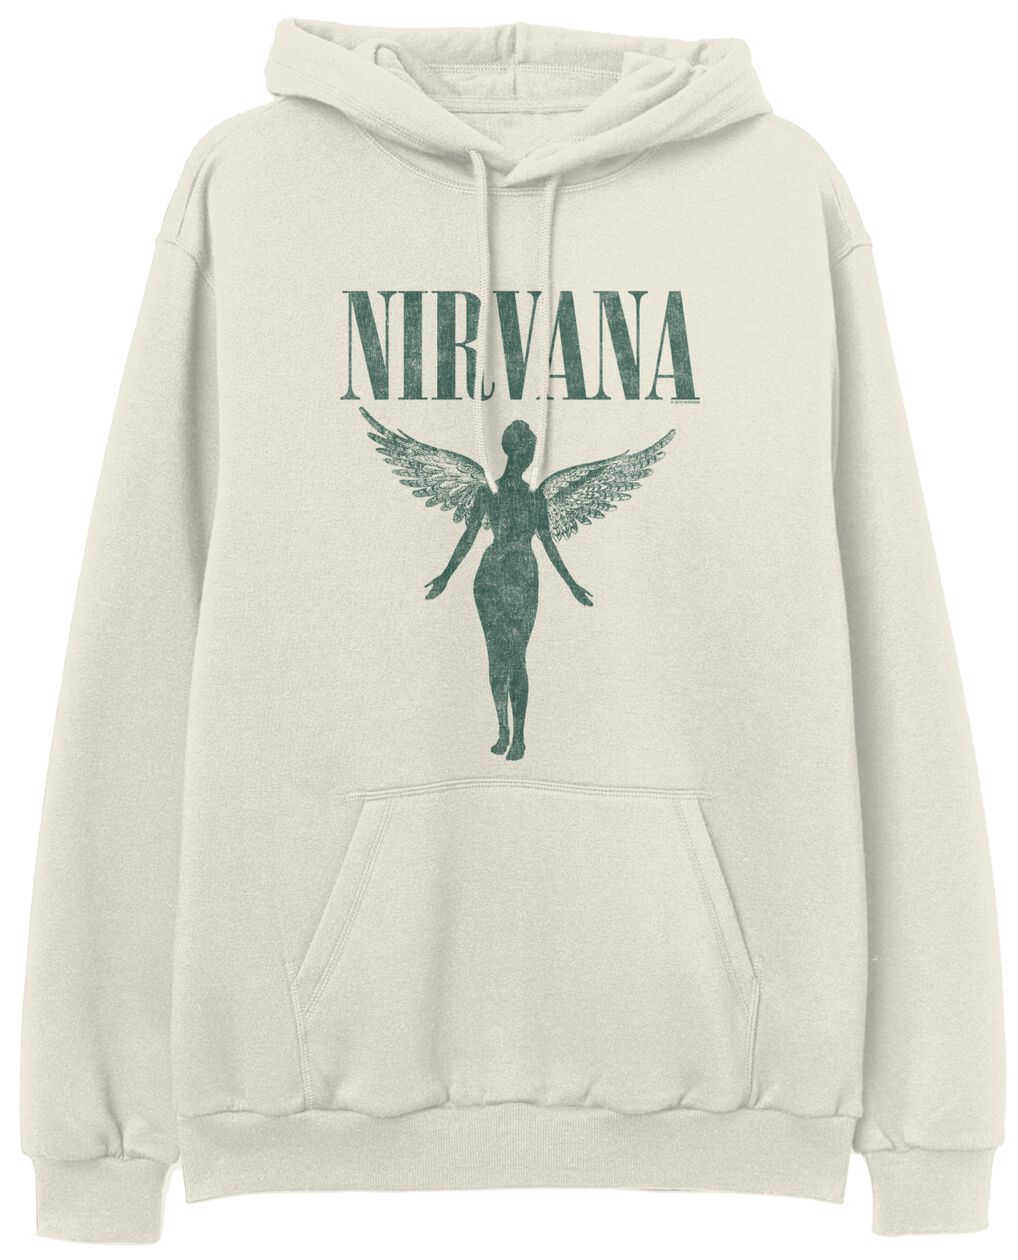 Nirvana Kapuzenpullover - Angel - S bis XXL - für Männer - Größe XL - beige  - Lizenziertes Merchandise!